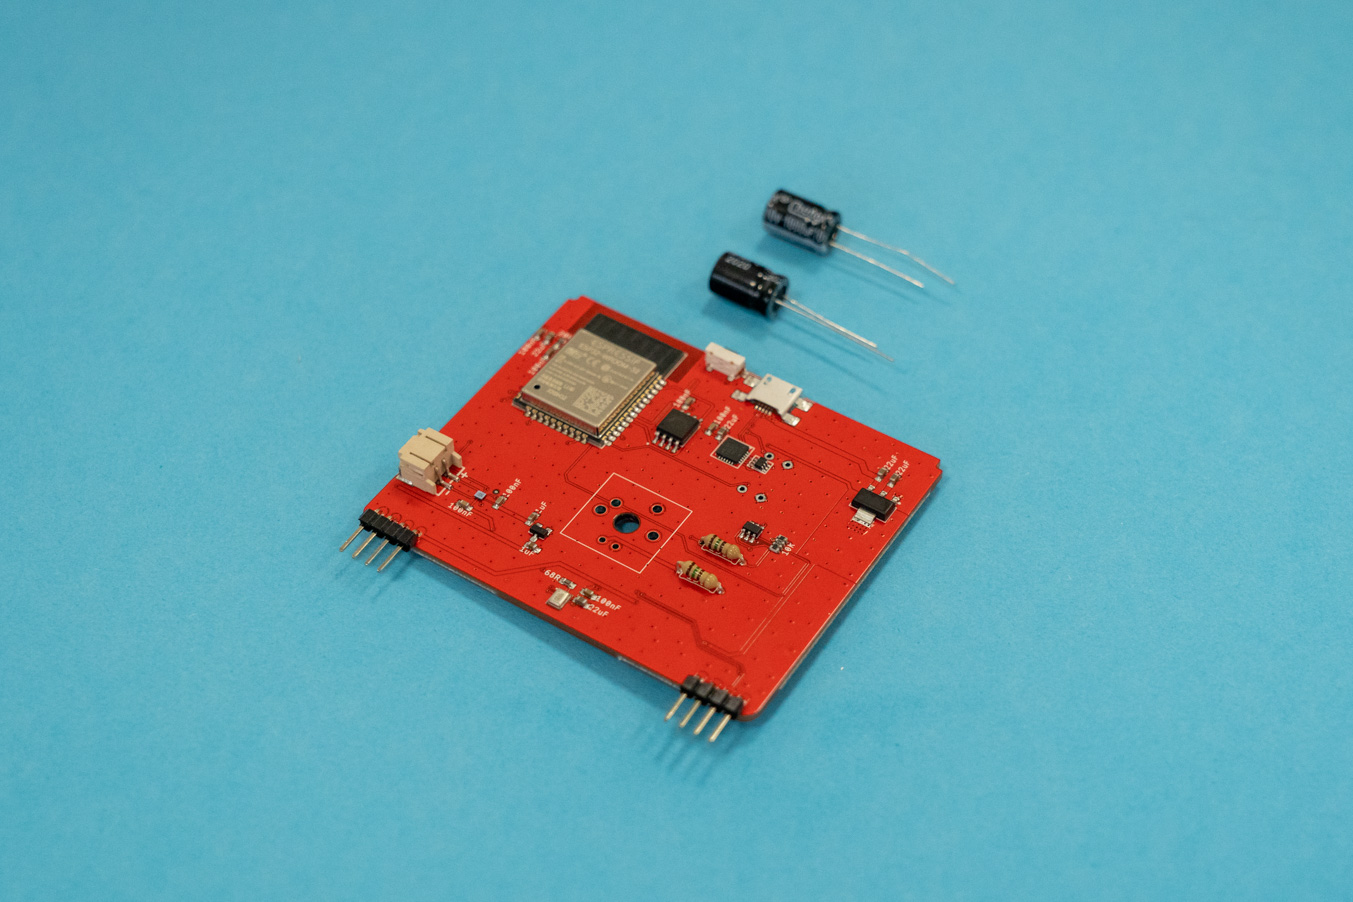 Main circuit board + 2 capacitors